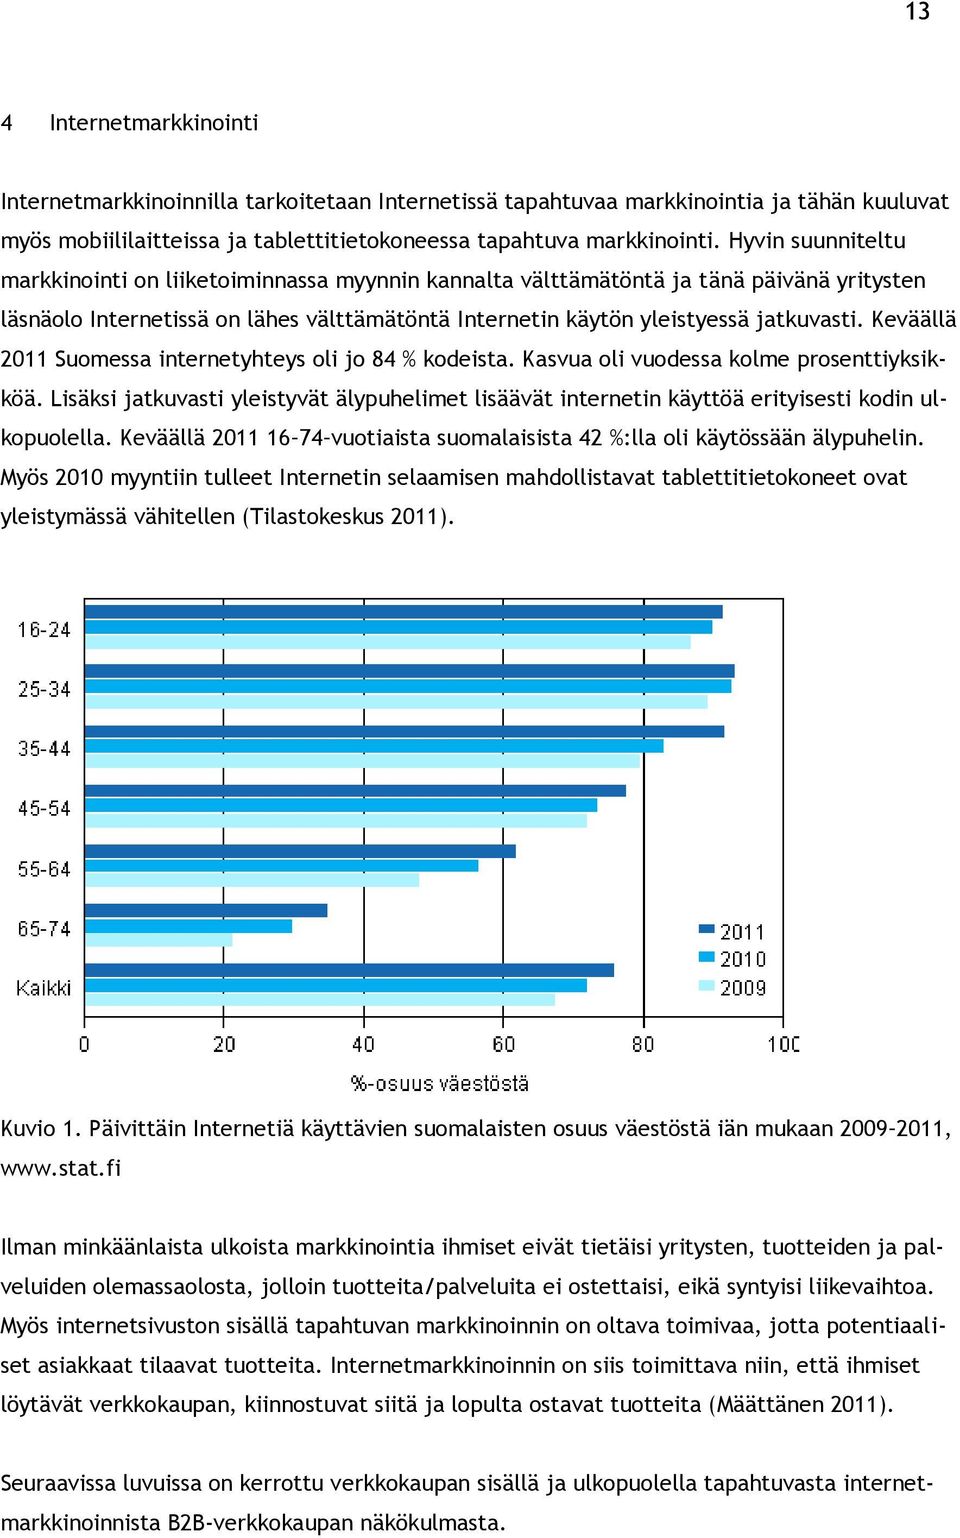 Keväällä 2011 Suomessa internetyhteys oli jo 84 % kodeista. Kasvua oli vuodessa kolme prosenttiyksikköä.